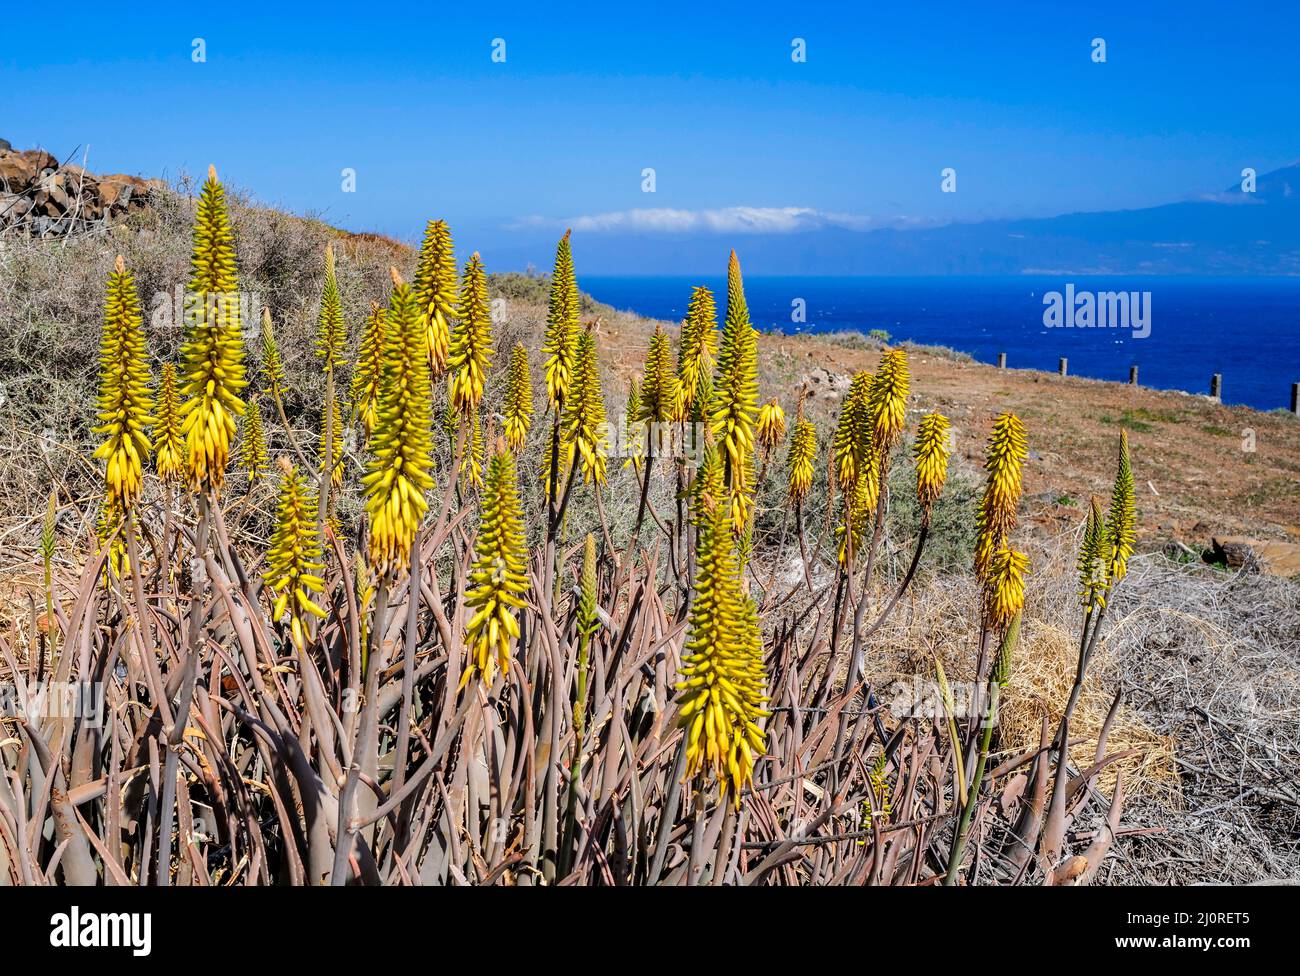 L'aloe vera plante avec des fleurs jaunes dans des paysages rocheux et secs près de San Sebastian sur la Gomera canary Island, Espagne Banque D'Images